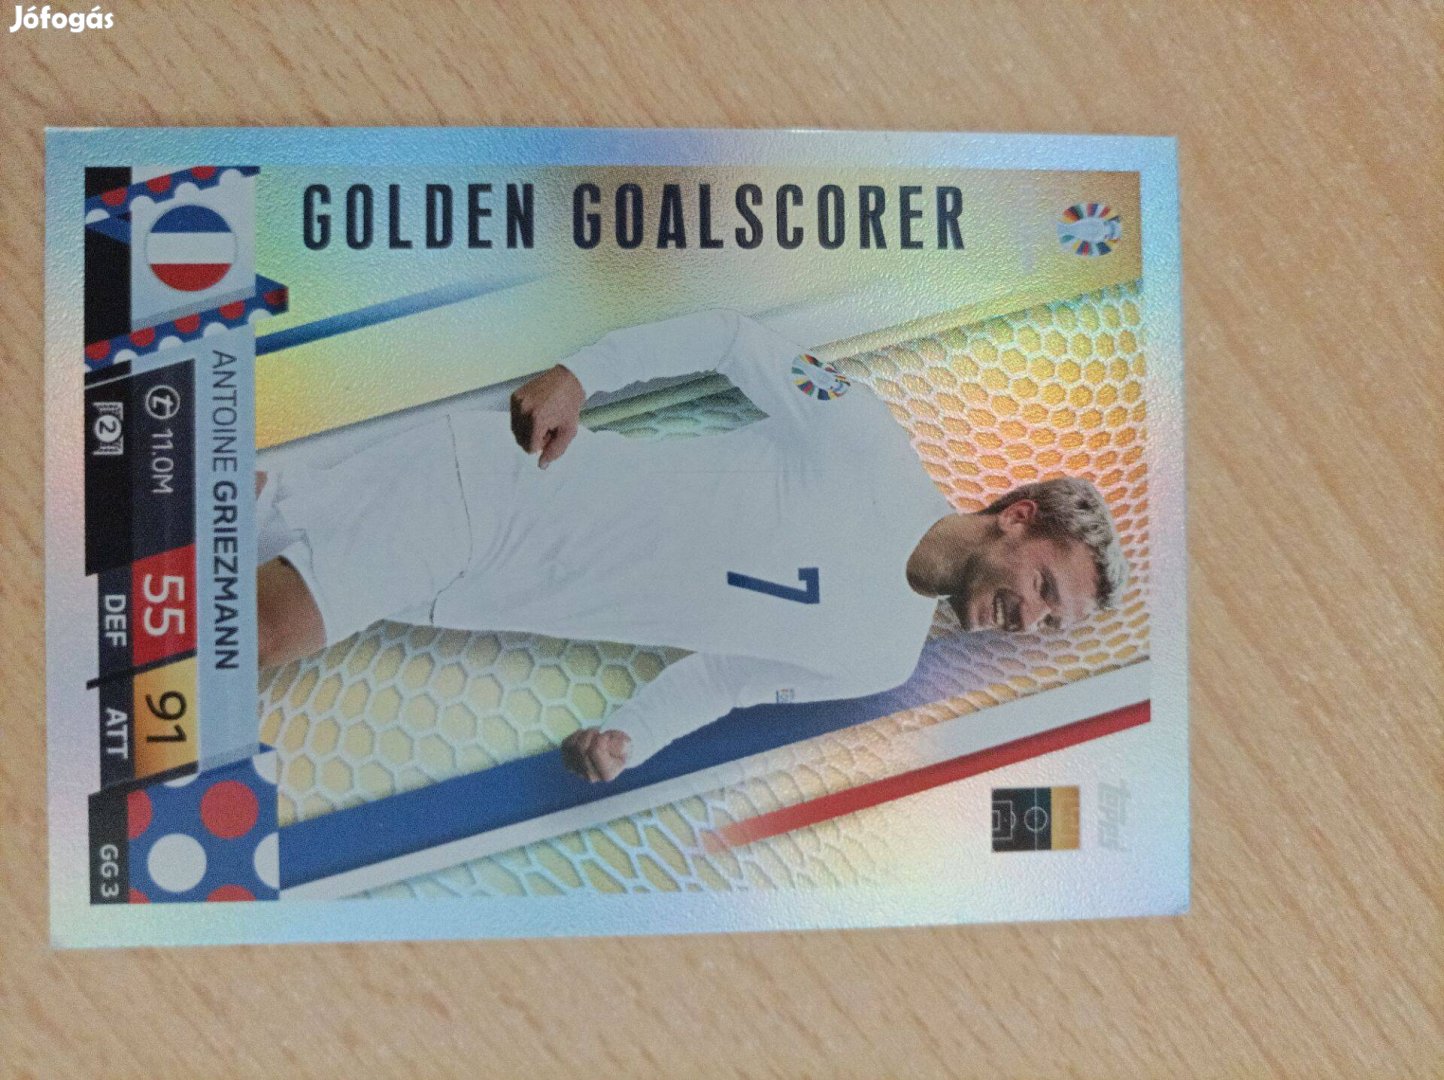 Golden goalscorer Griezmann